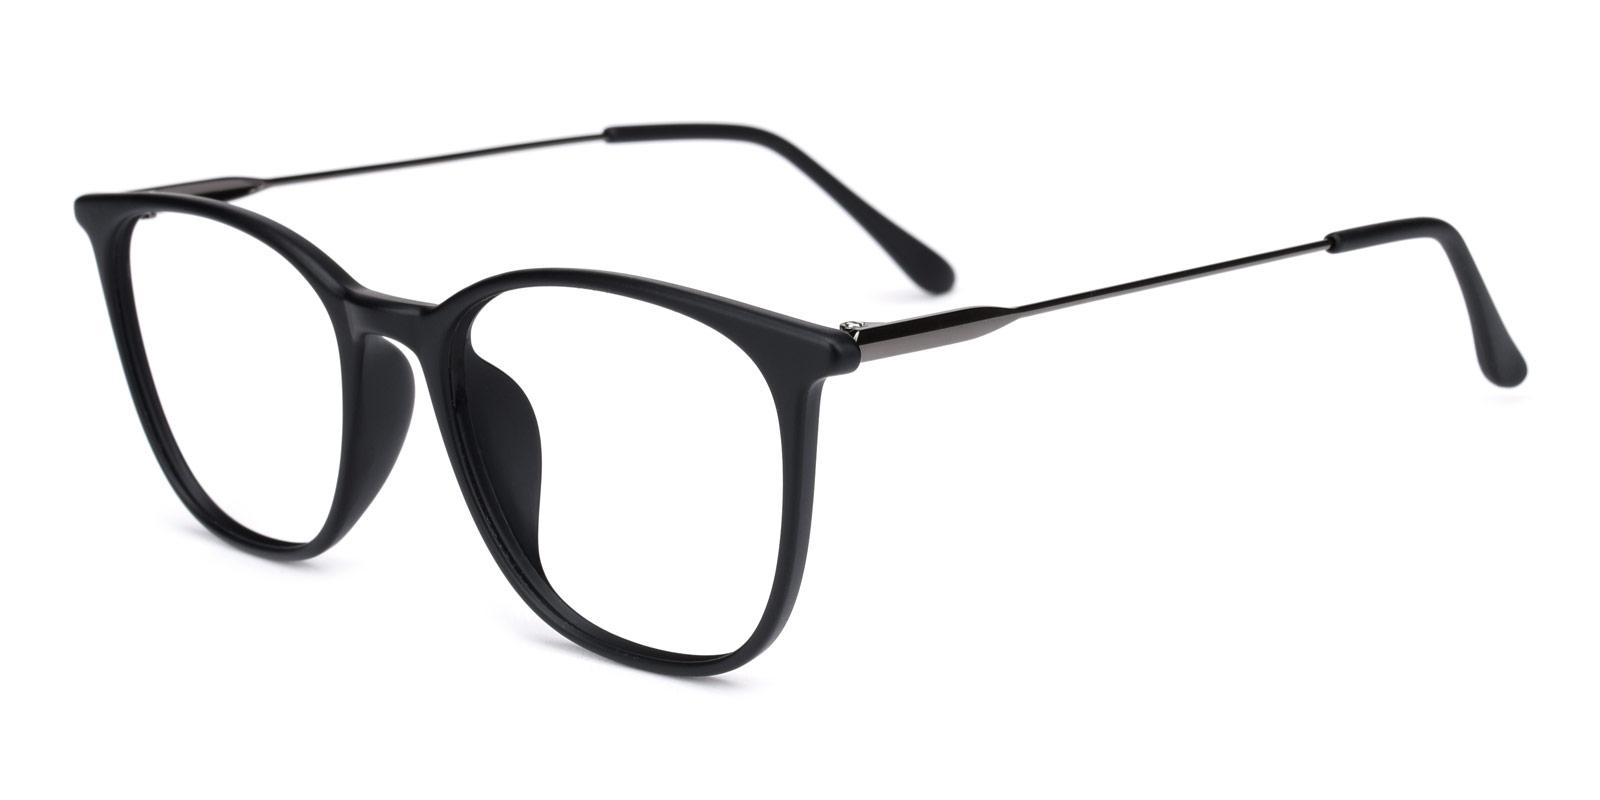 Who-Black-Square-TR-Eyeglasses-detail